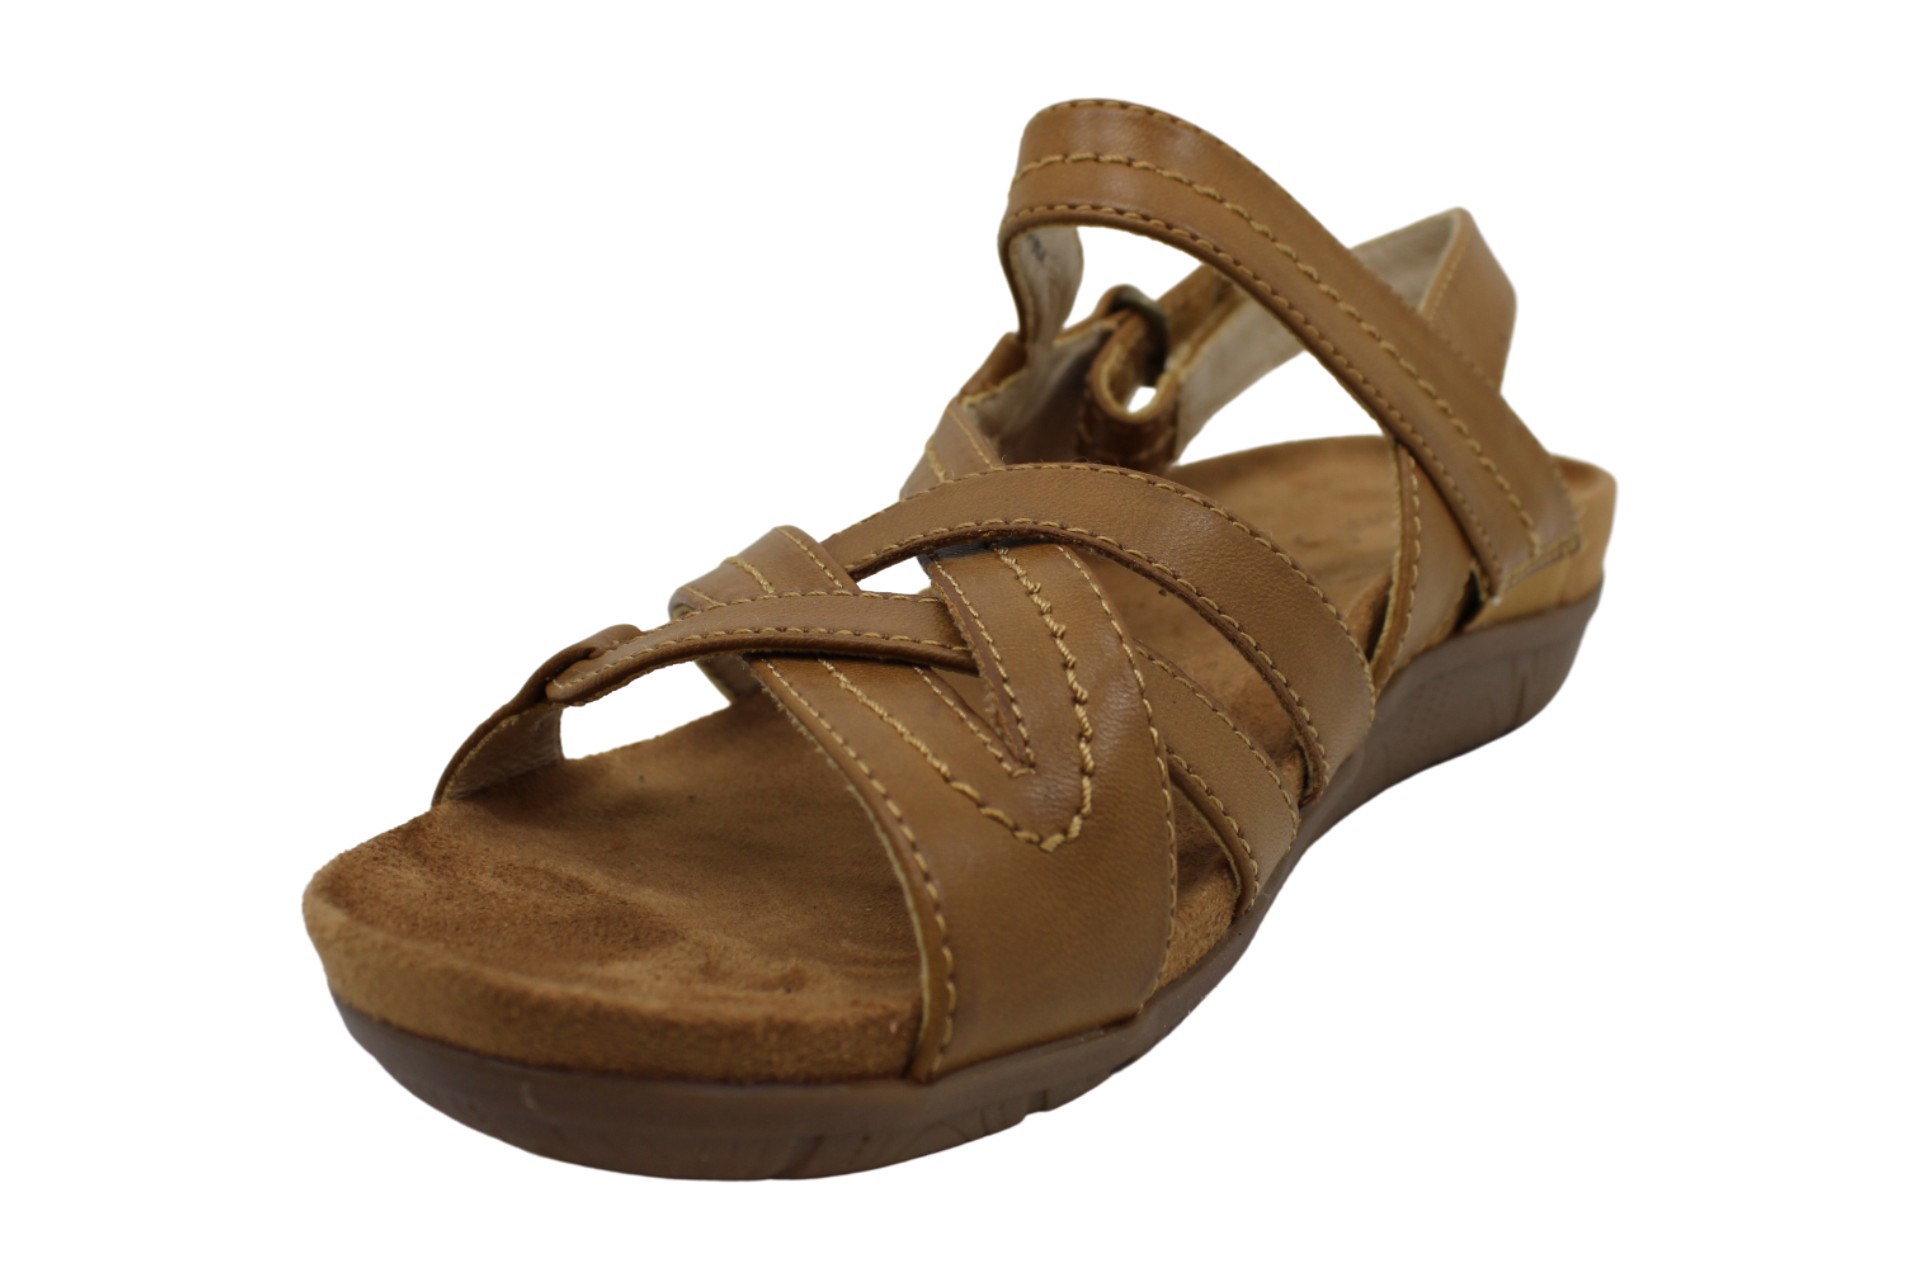 Bare Traps Womens Jordyn Open Toe Casual Ankle Strap Sandals Black 1 Size 65 Ebay